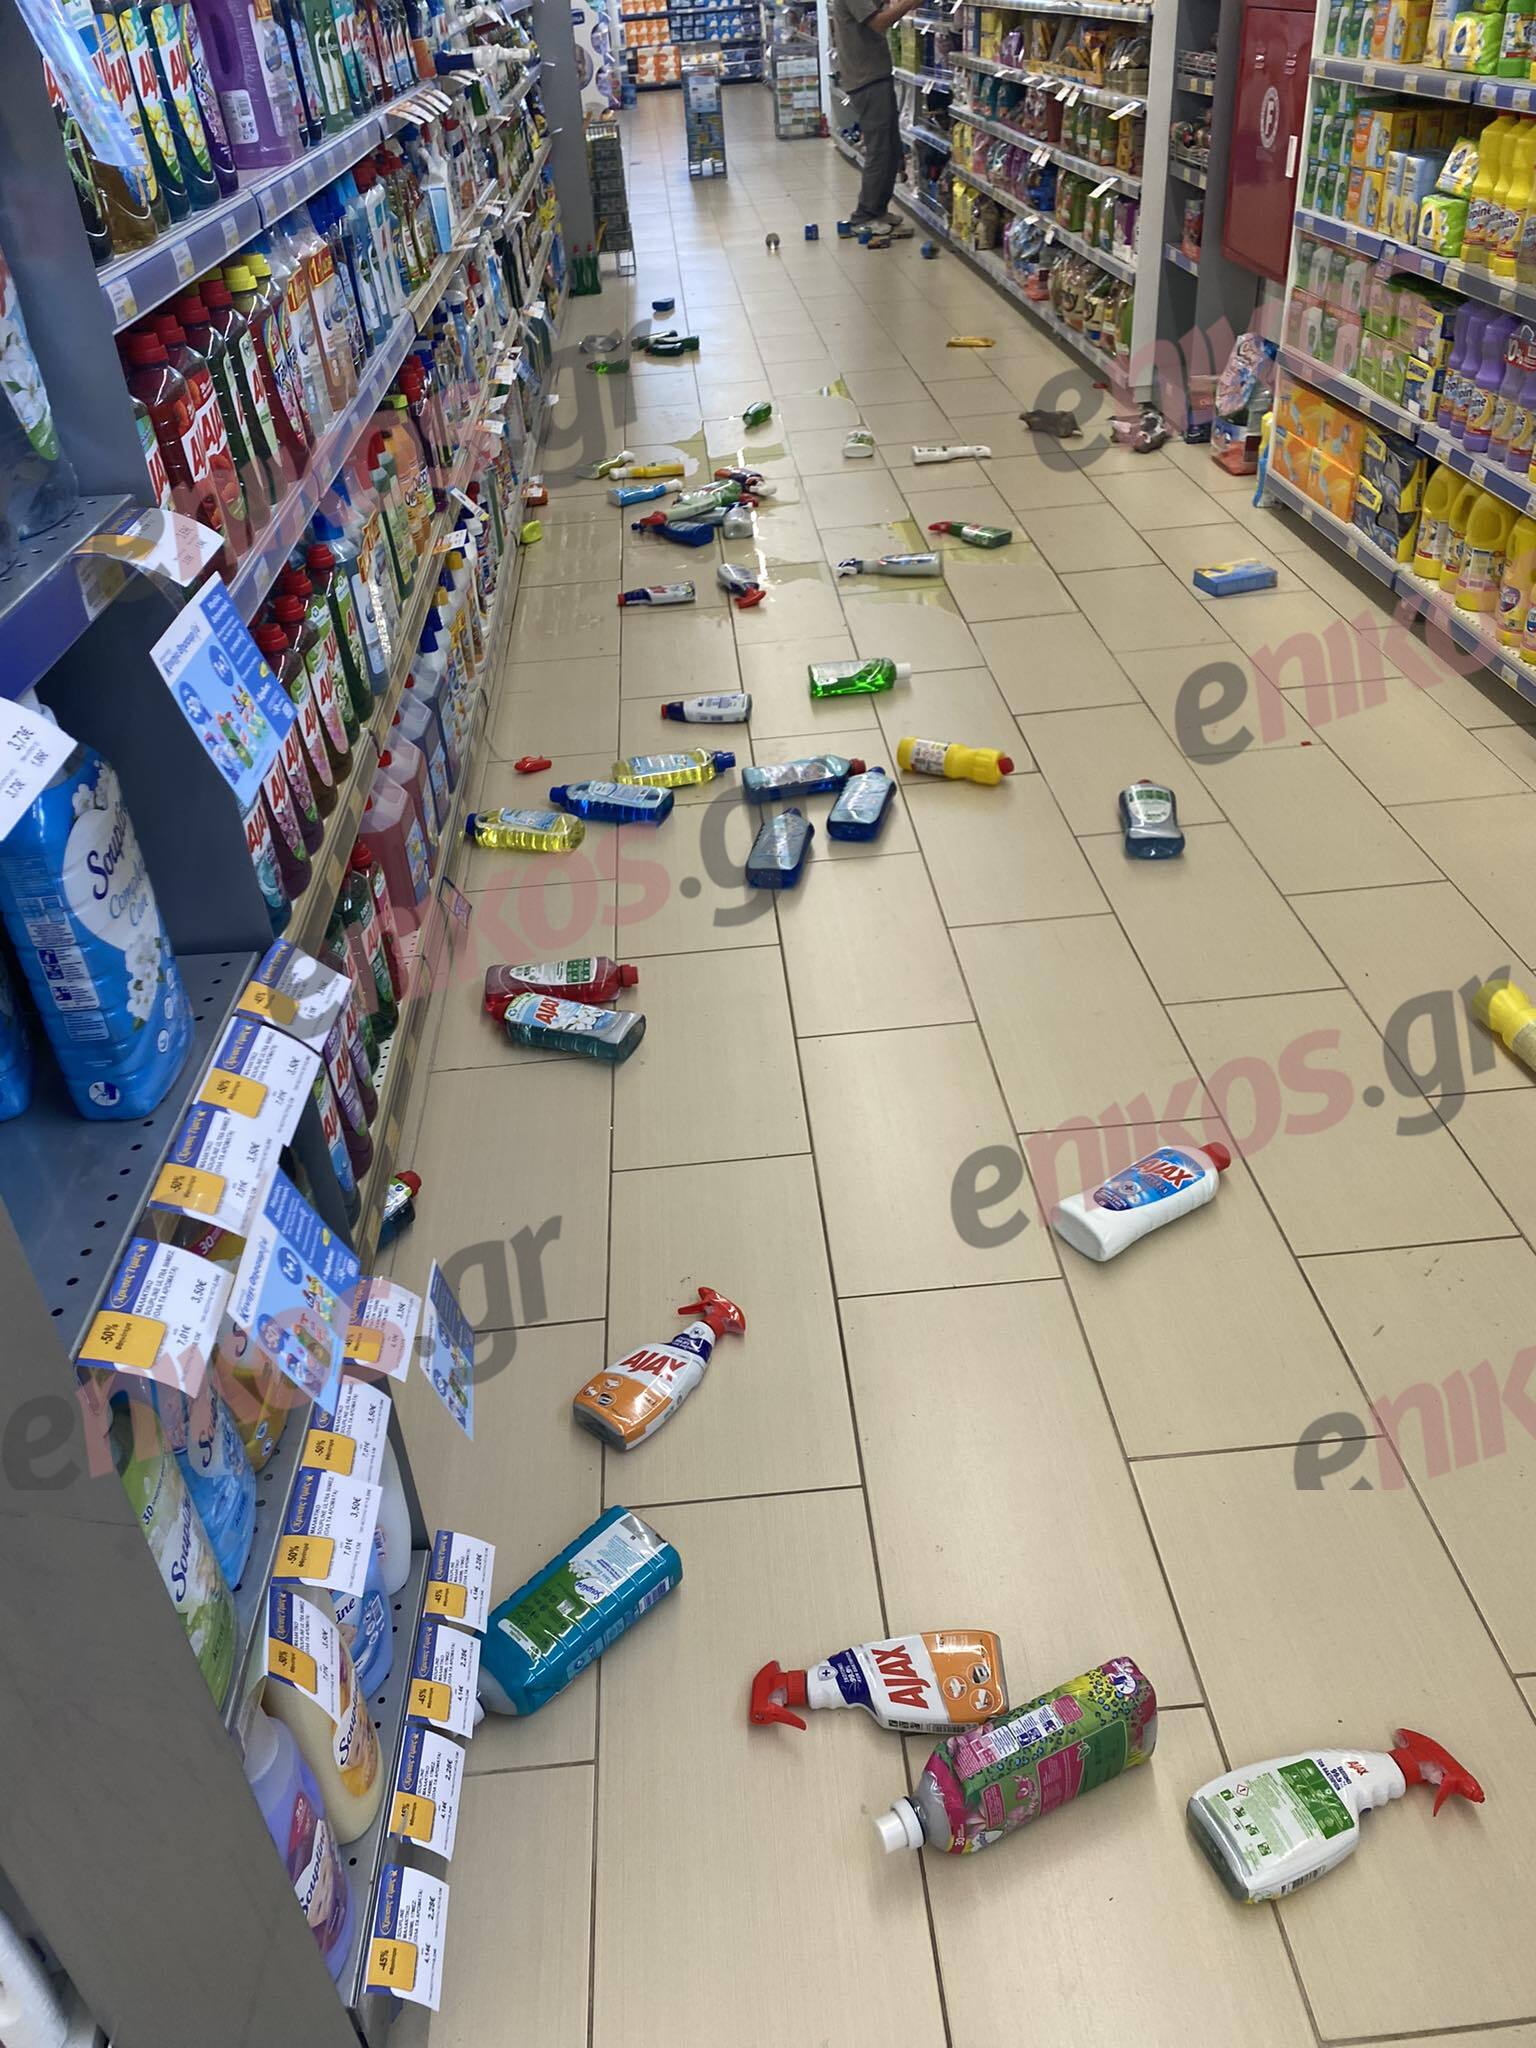 σούπερ μάρκετ σεισμός Μαντούδι  Σεισμός στην Εύβοια: Έπεσαν προϊόντα από τα ράφια σούπερ μάρκετ στο Μαντούδι – Έκλεισαν τα σχολεία mantoudi seismos2